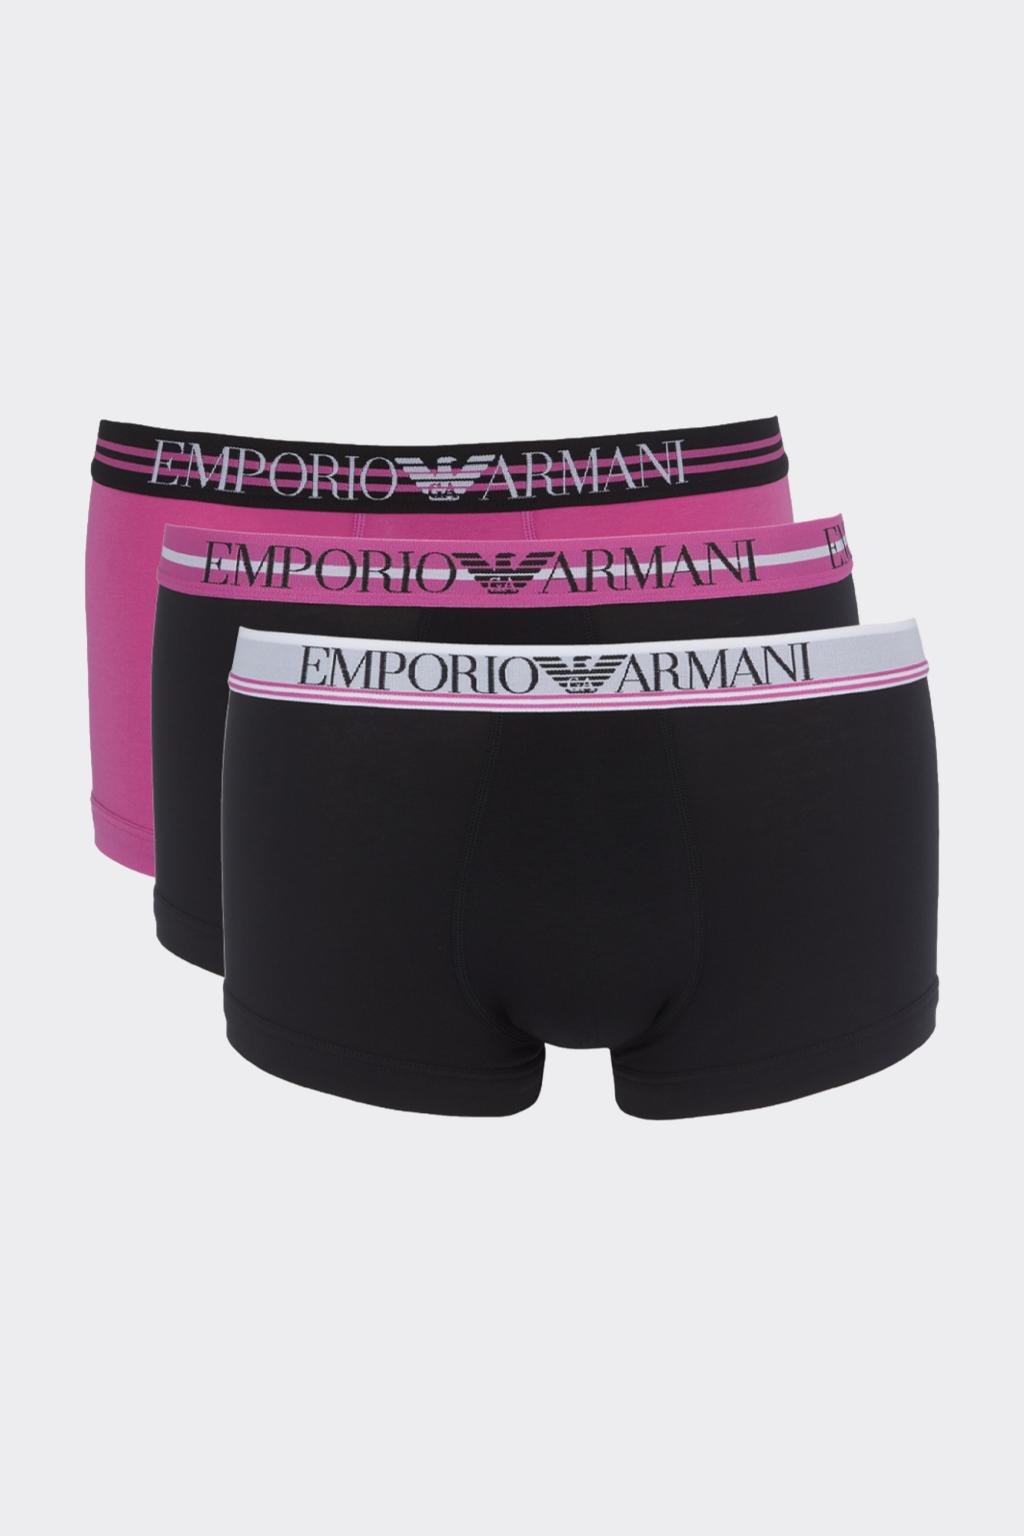 Emporio Armani  boxerky 3-balení - černá, fialová